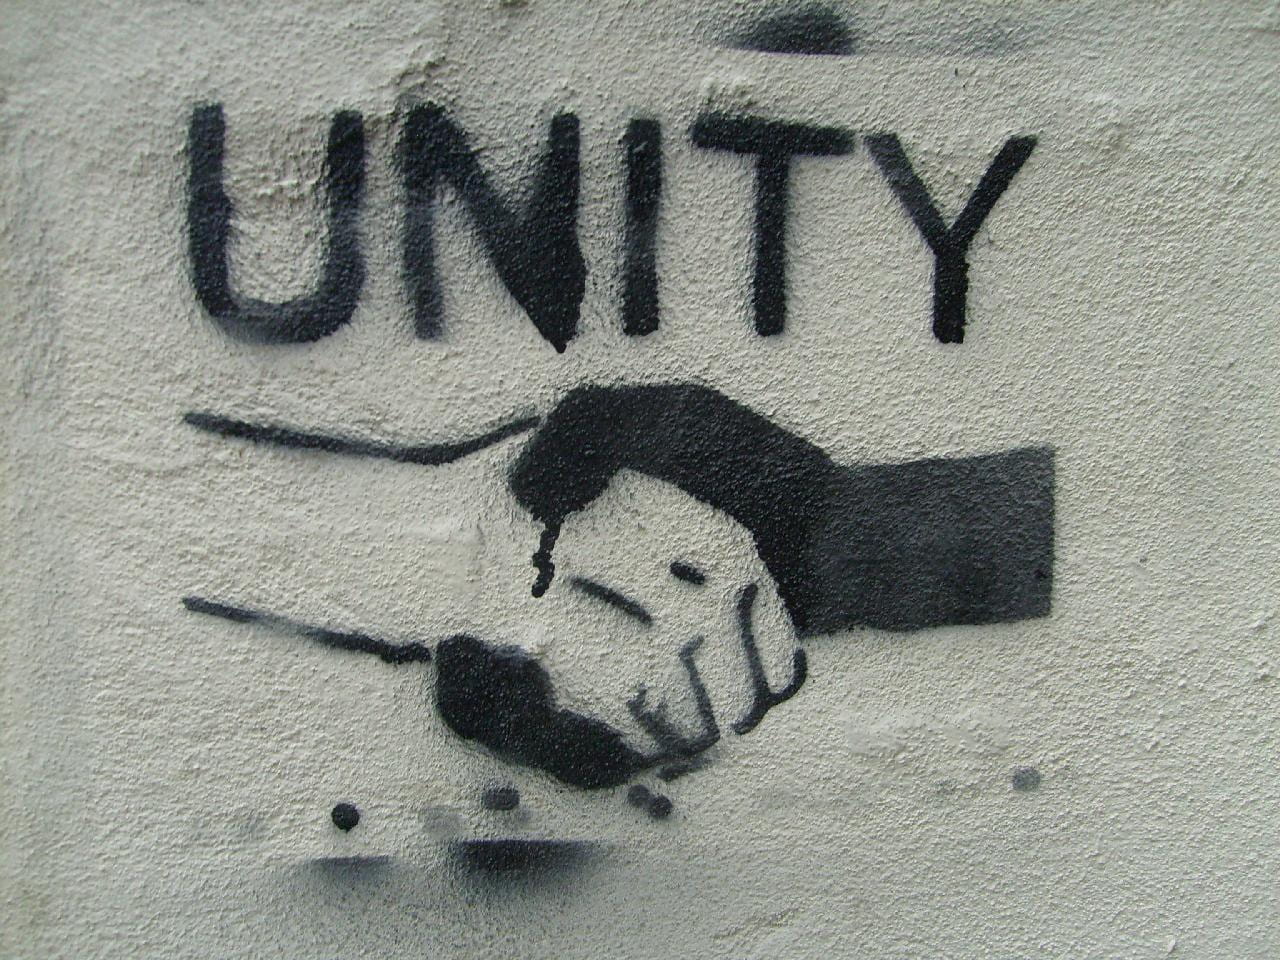 a graffiti that reads UNITY